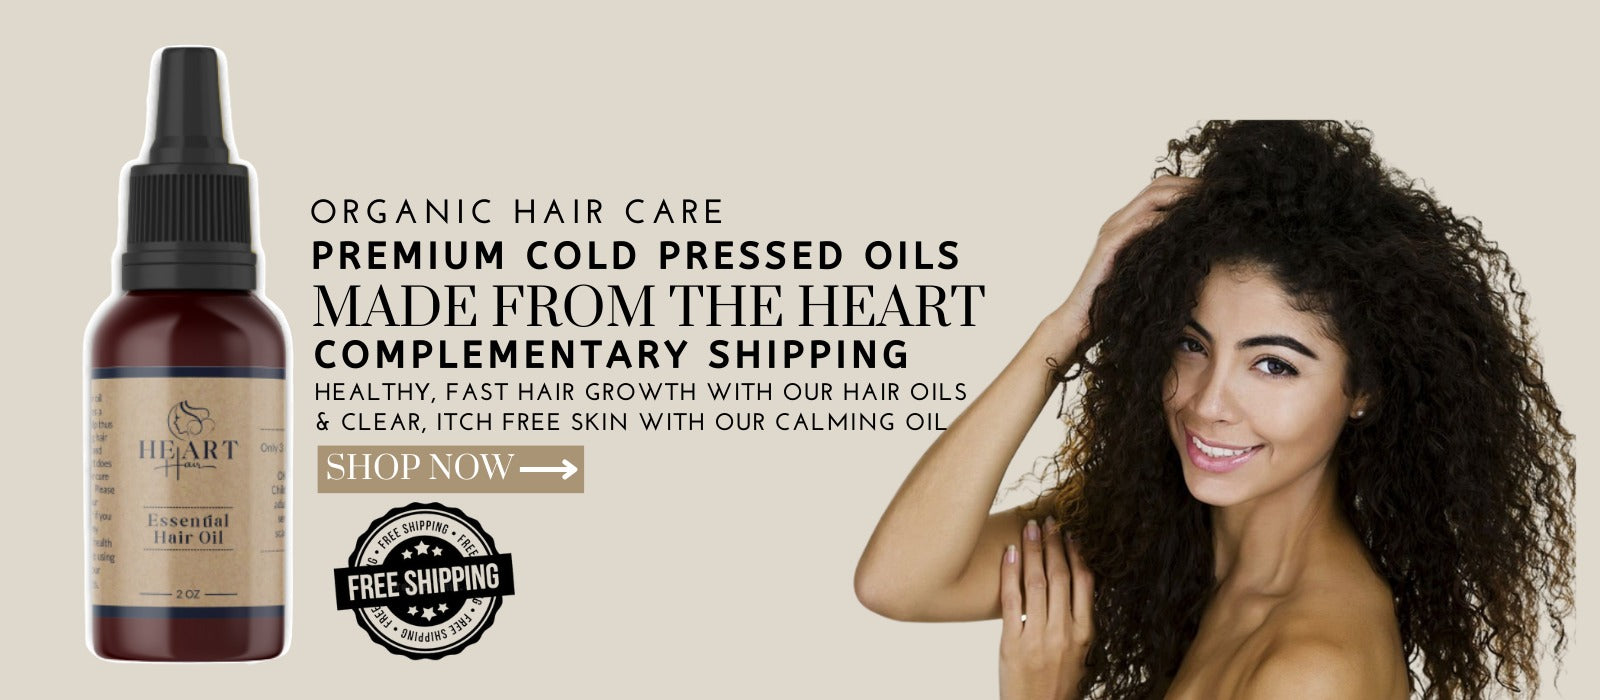 Best Essential Oils for Hair Growth | Heart Hair & Beauty LLC ...